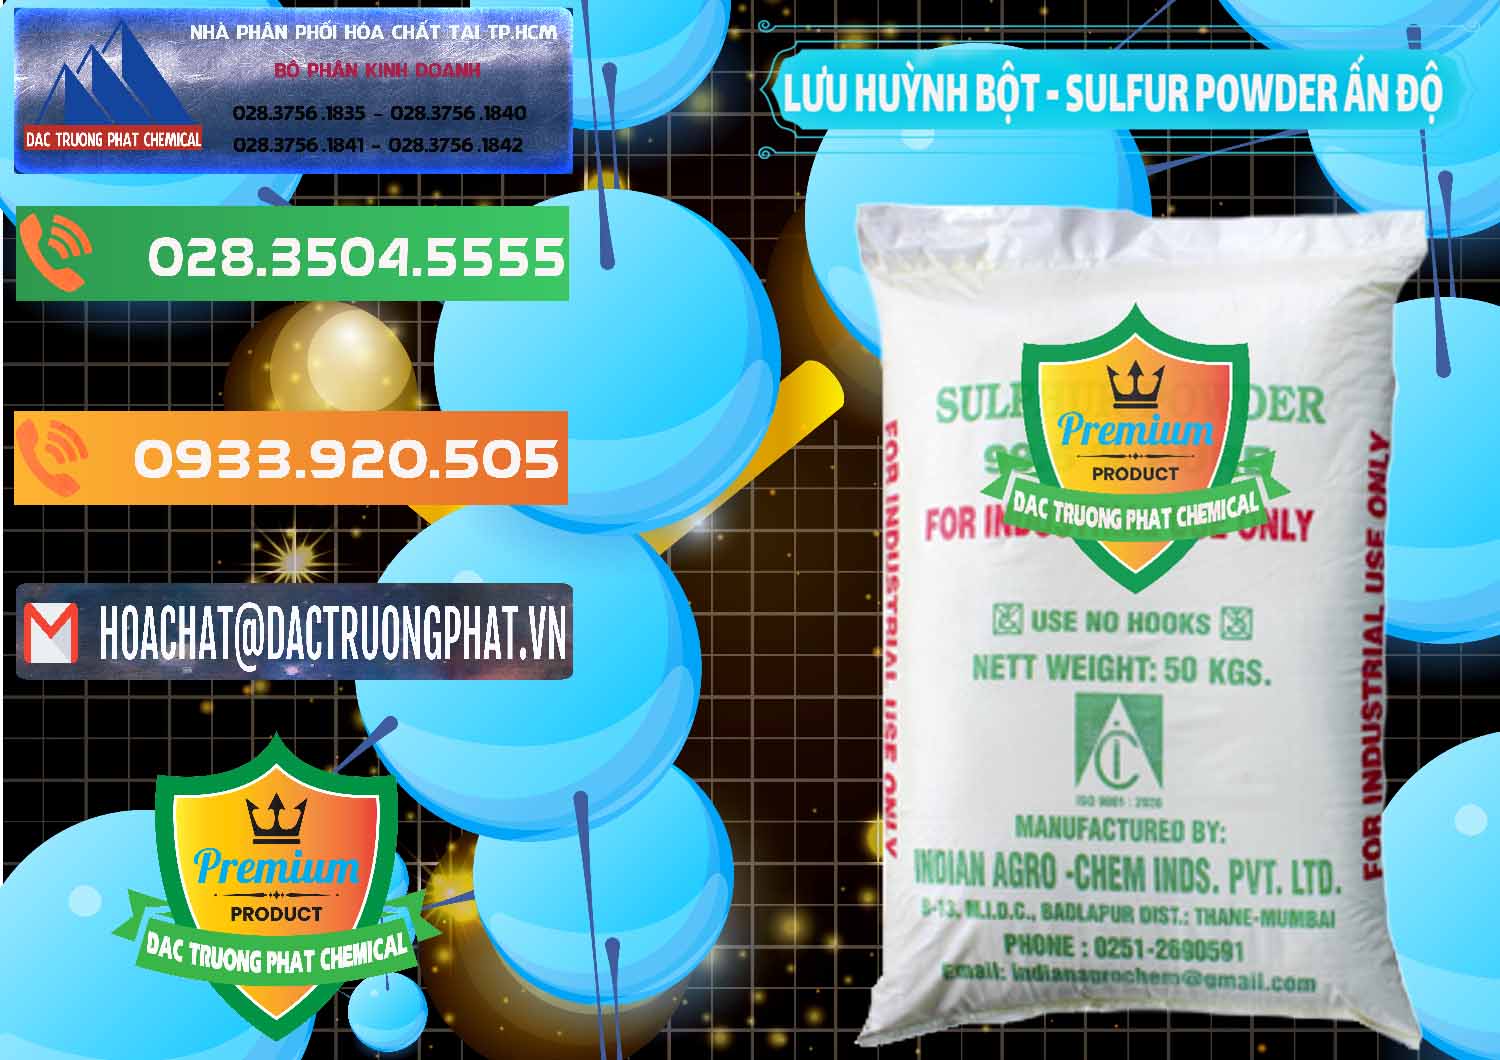 Công ty kinh doanh _ bán Lưu huỳnh Bột - Sulfur Powder Ấn Độ India - 0347 - Đơn vị chuyên bán & phân phối hóa chất tại TP.HCM - hoachatxulynuoc.com.vn